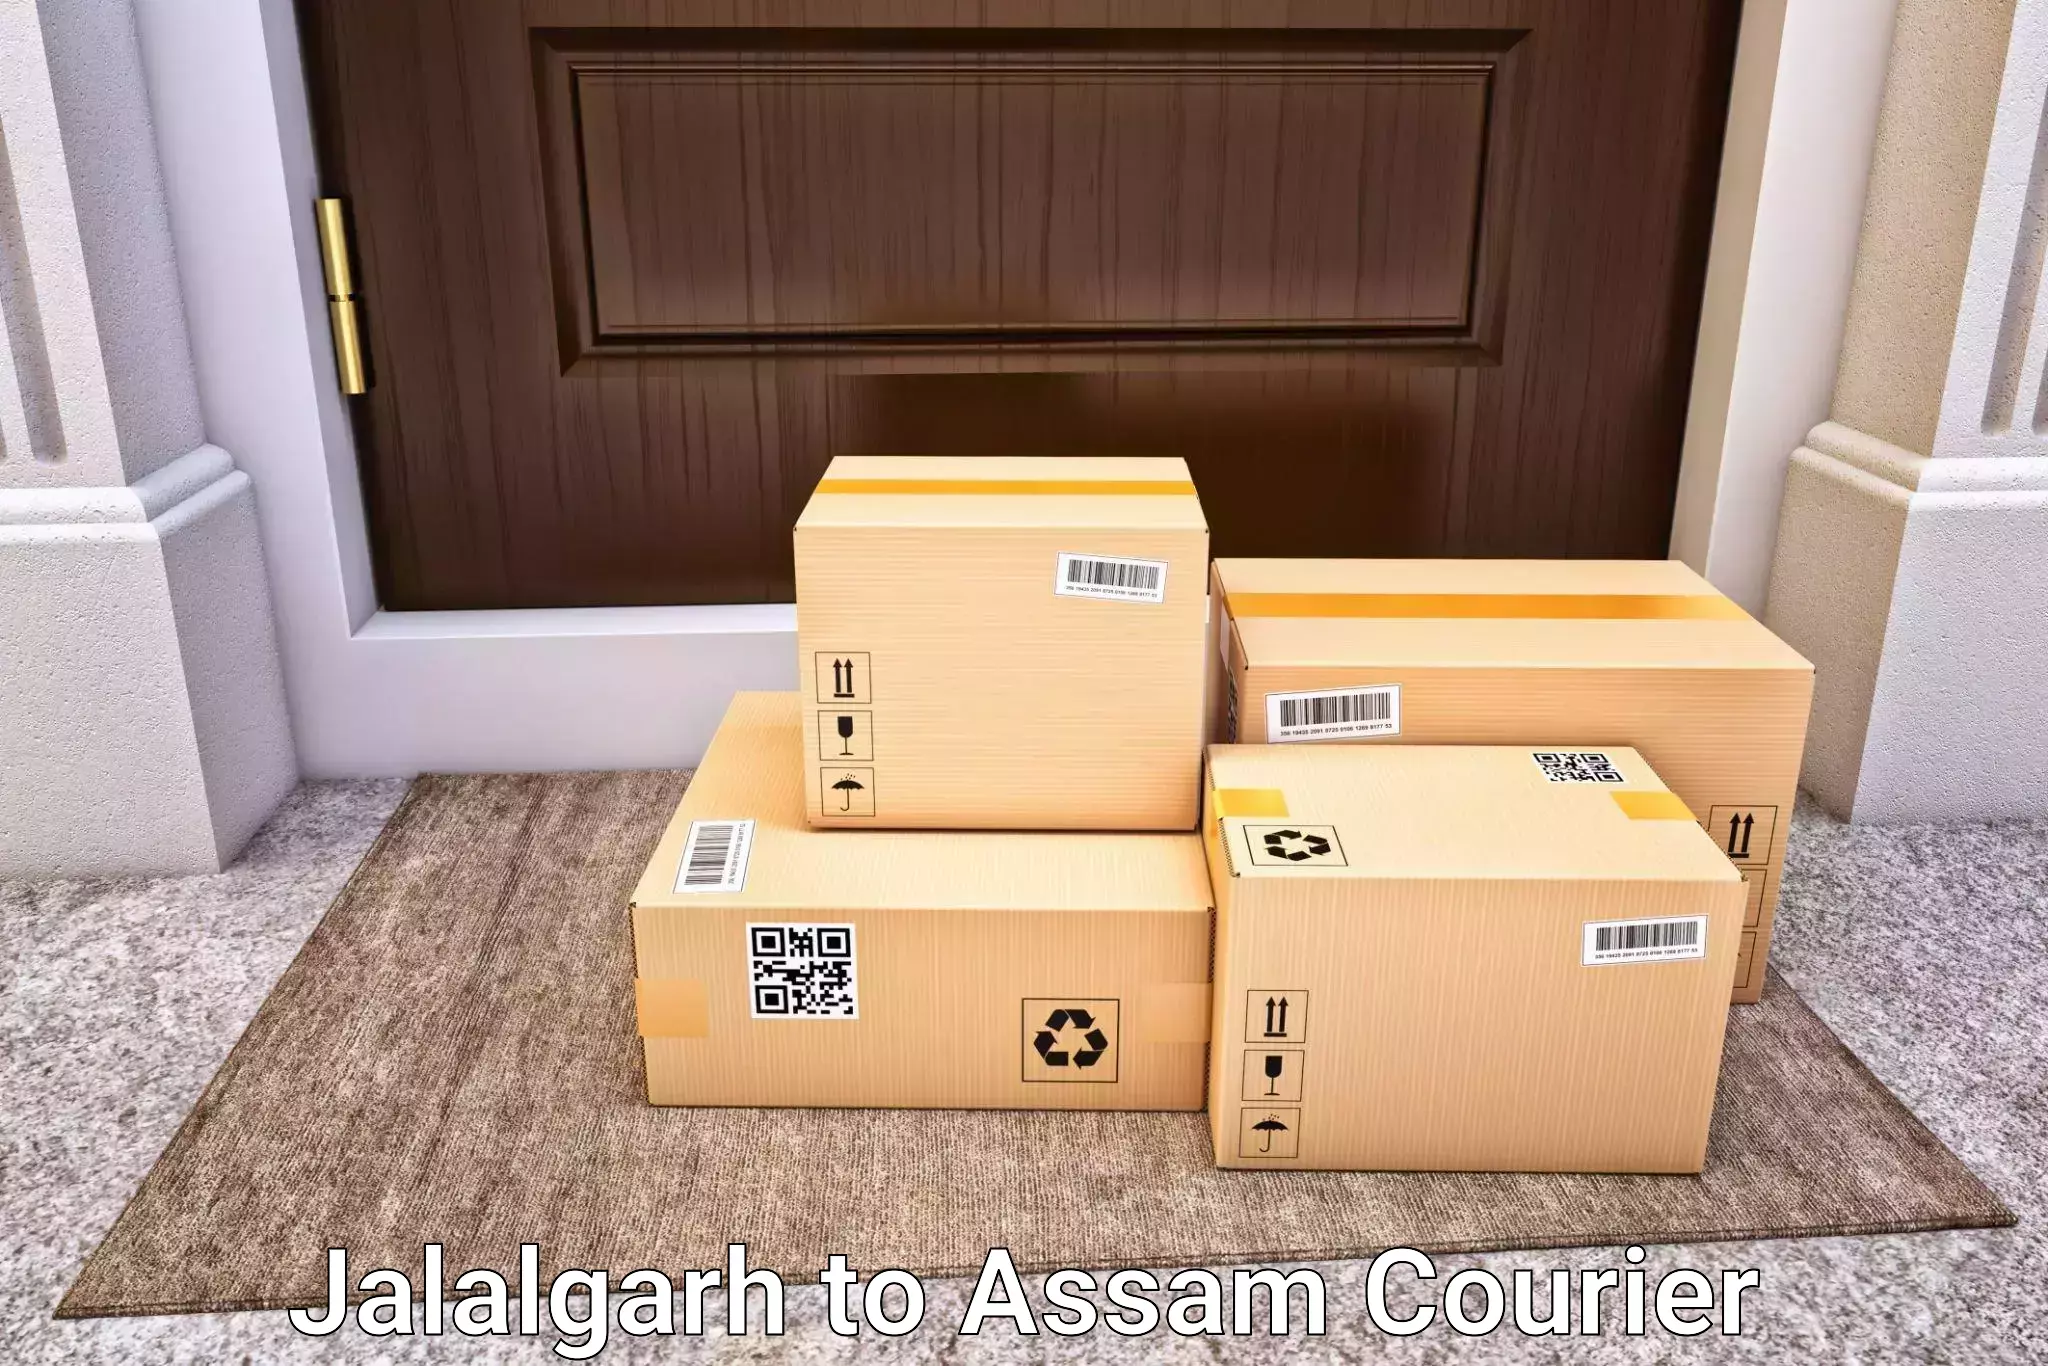 Luggage shipment tracking Jalalgarh to Pailapool